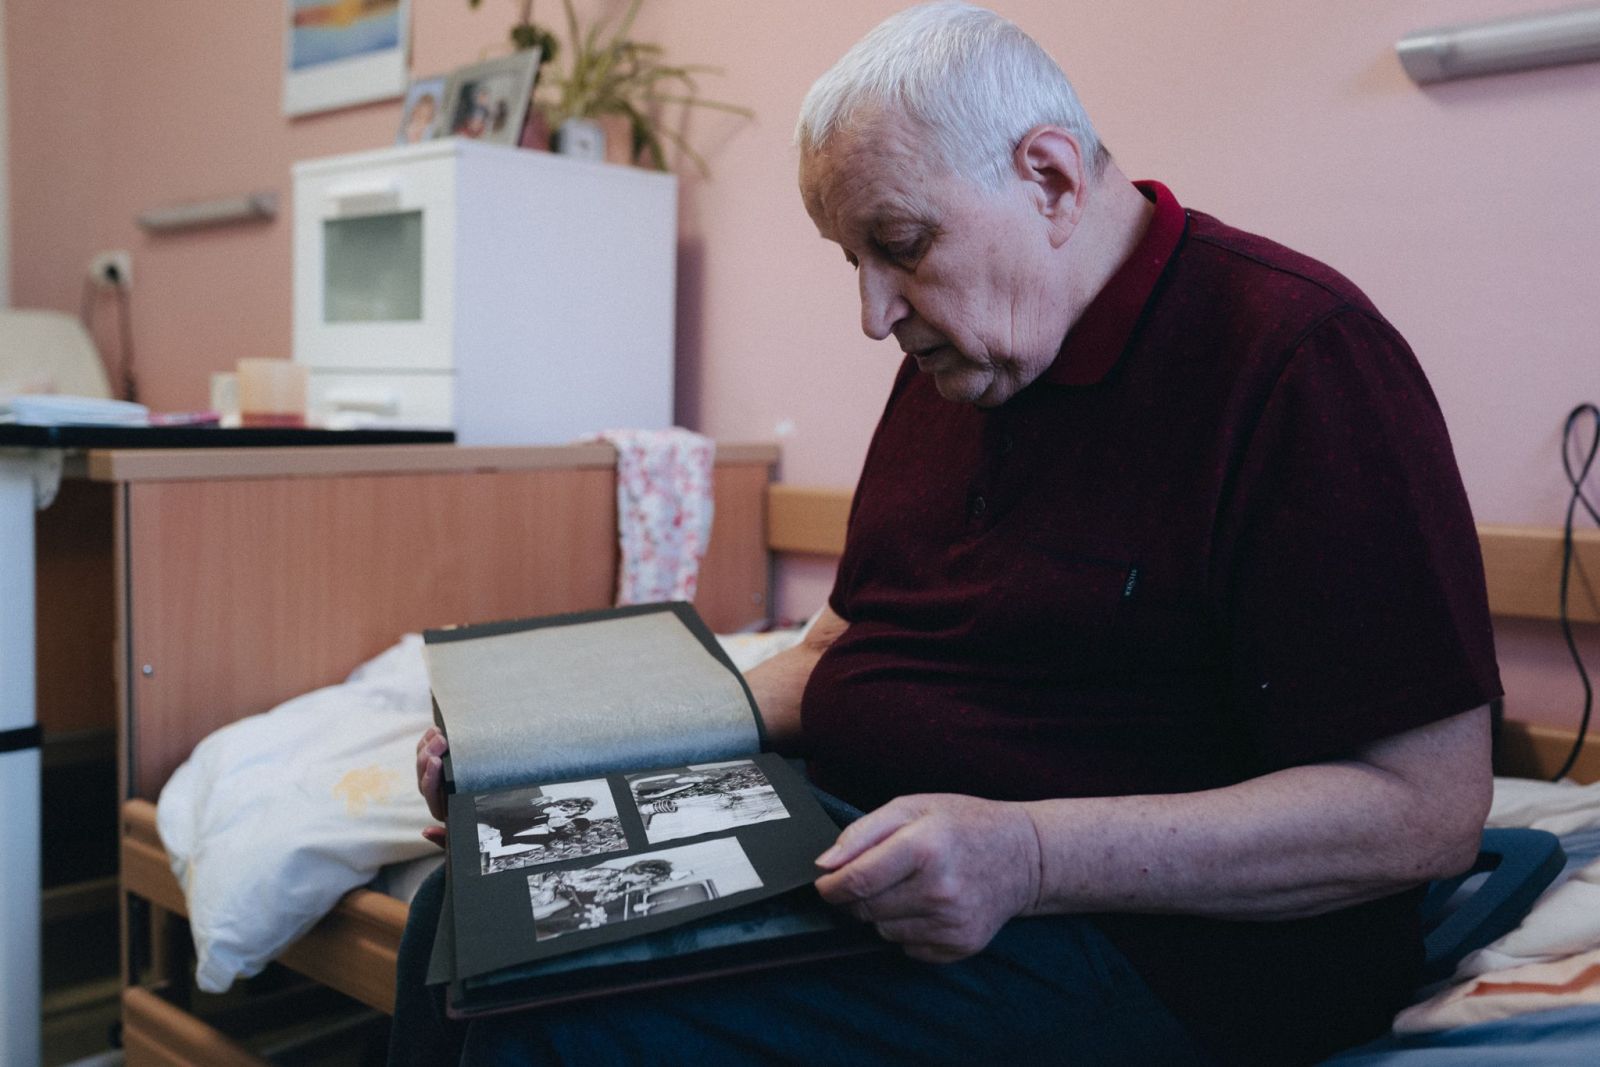 Zápisník jednej lásky v bratislavskom domove dôchodcov. Už 49 rokov žijú Mirko a Anička len jeden pre druhého